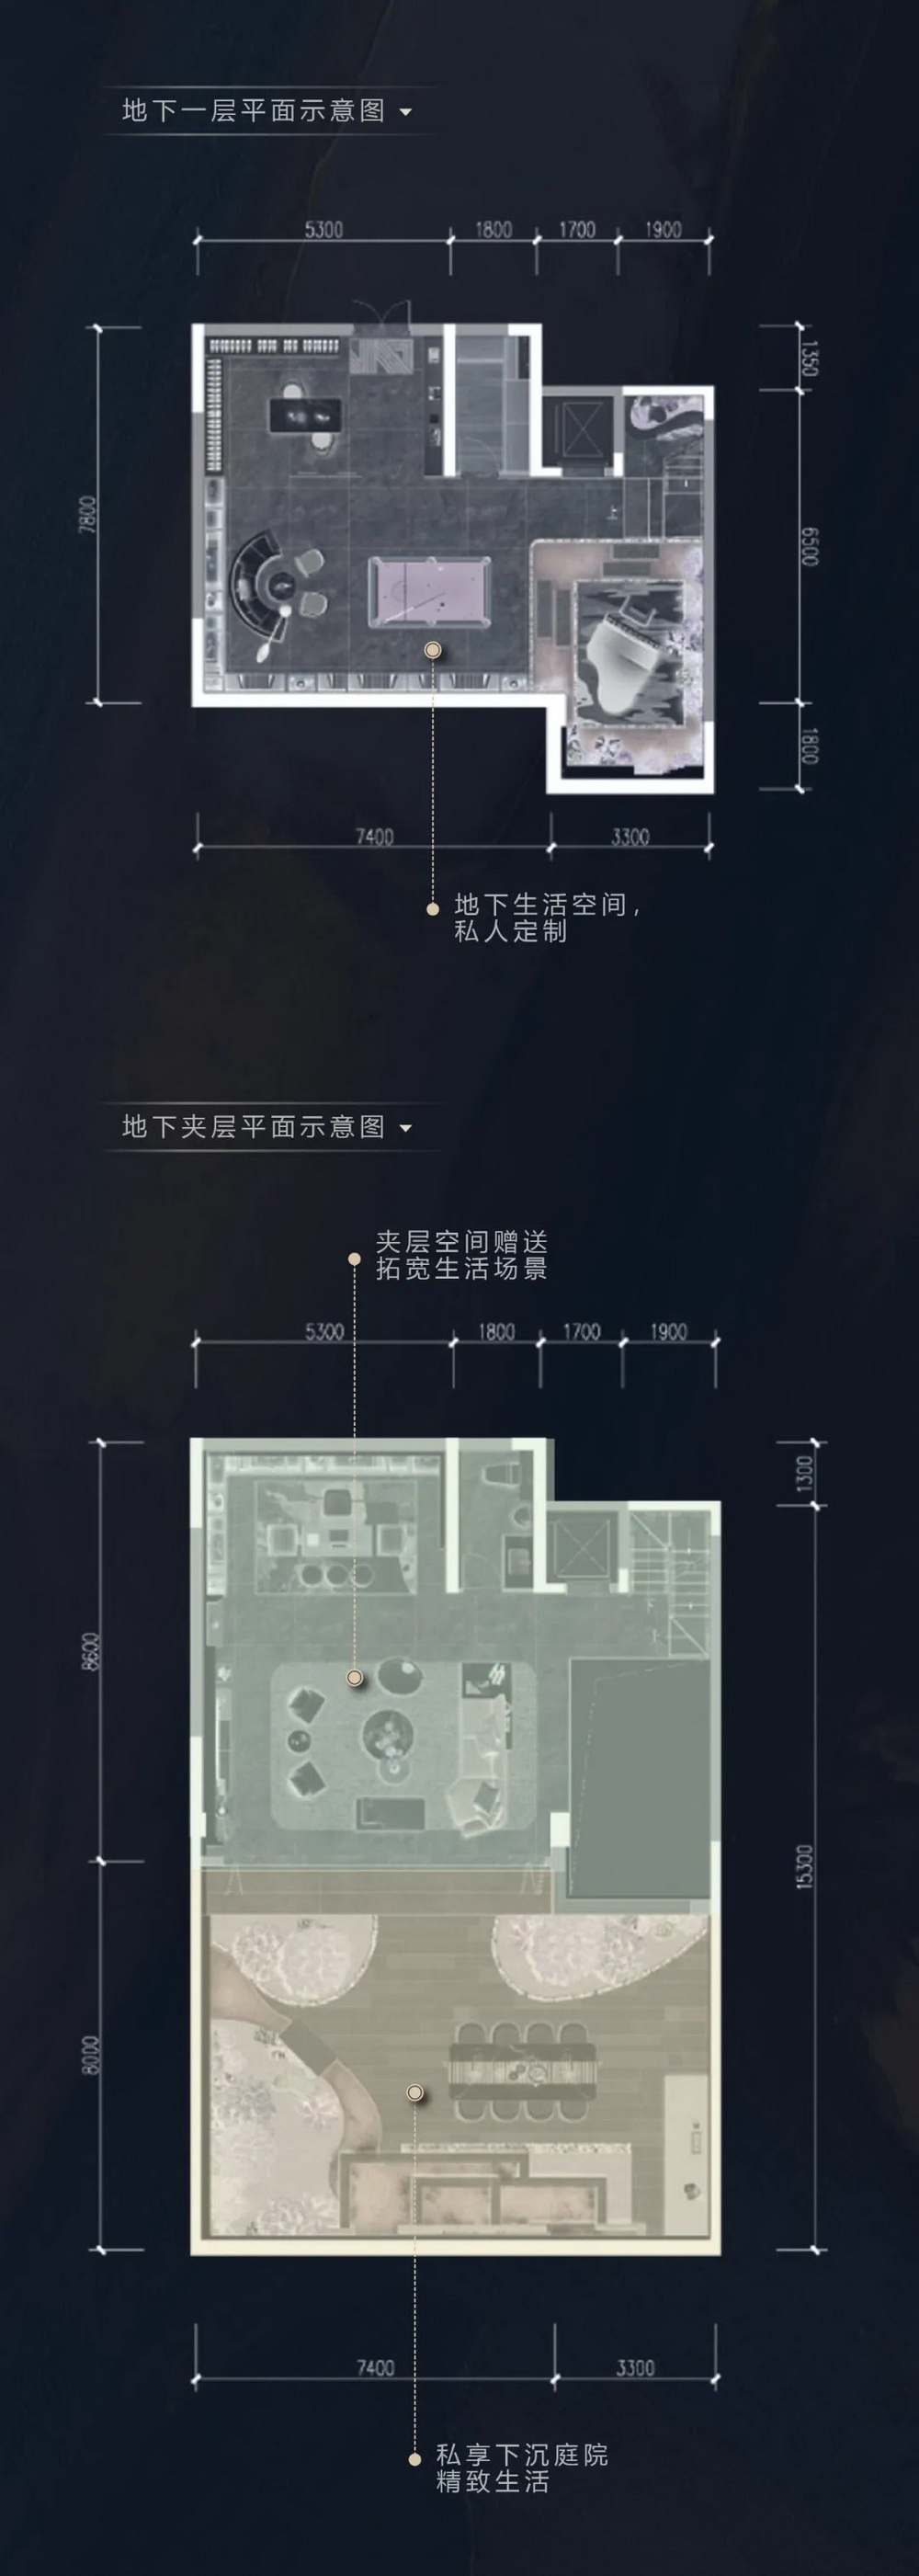 濟南 龍湖雲峰原著 建筑設計 / HZS滙張思第十事業部